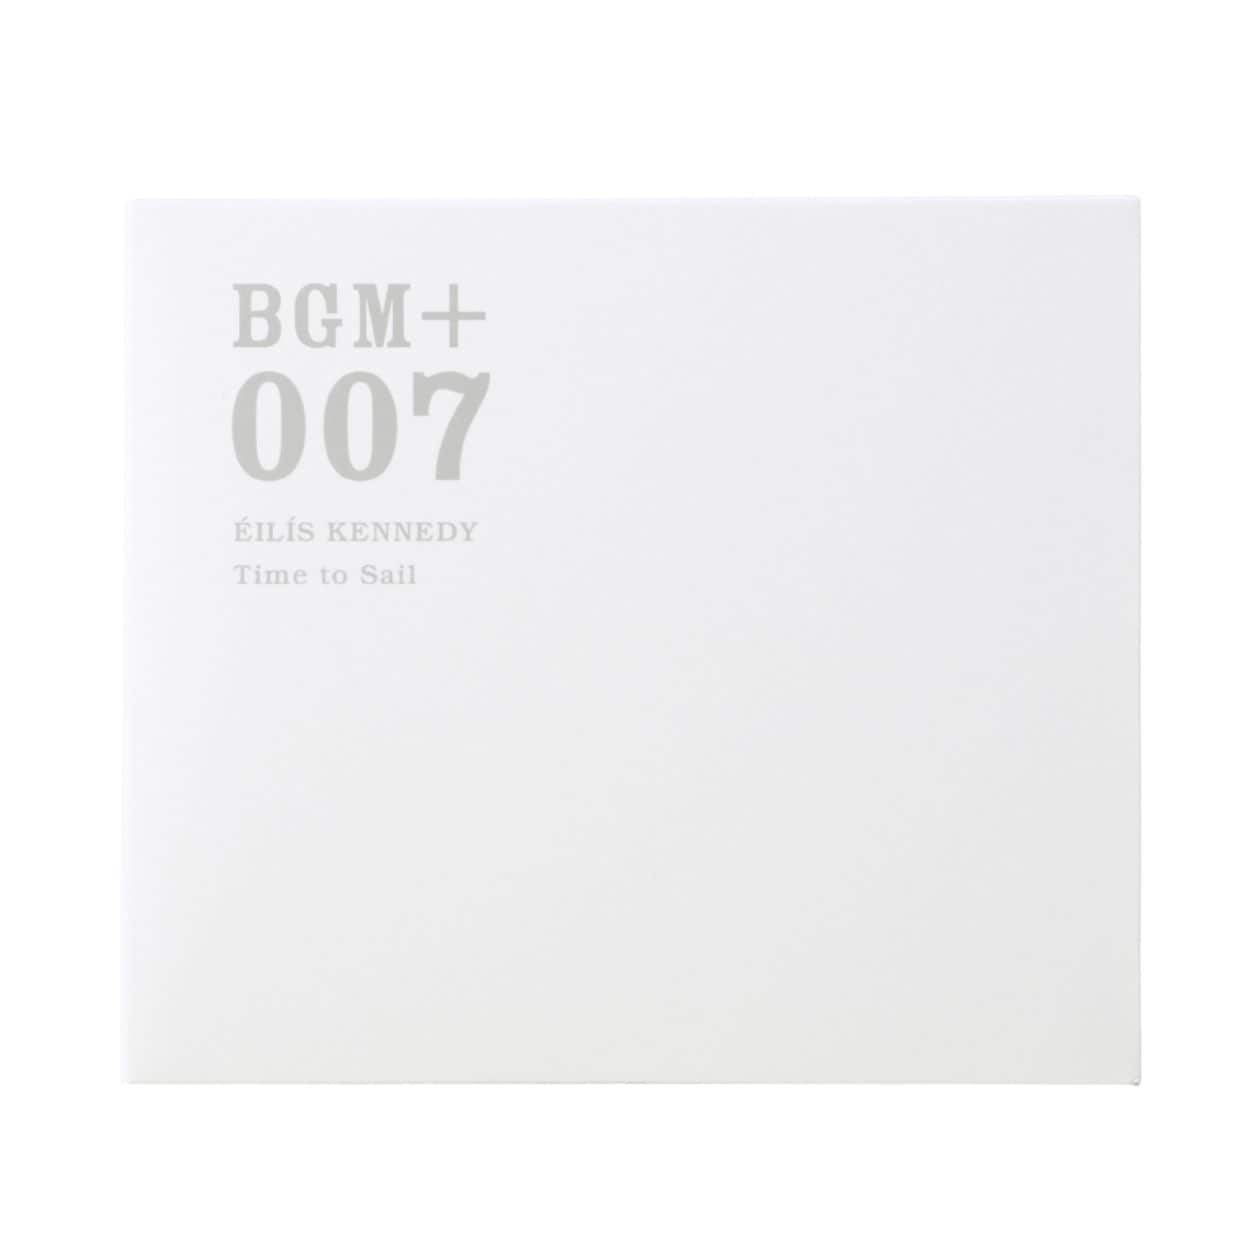 무인양품 일본 CD 음악 BGM +007 EILIS KENNEDY